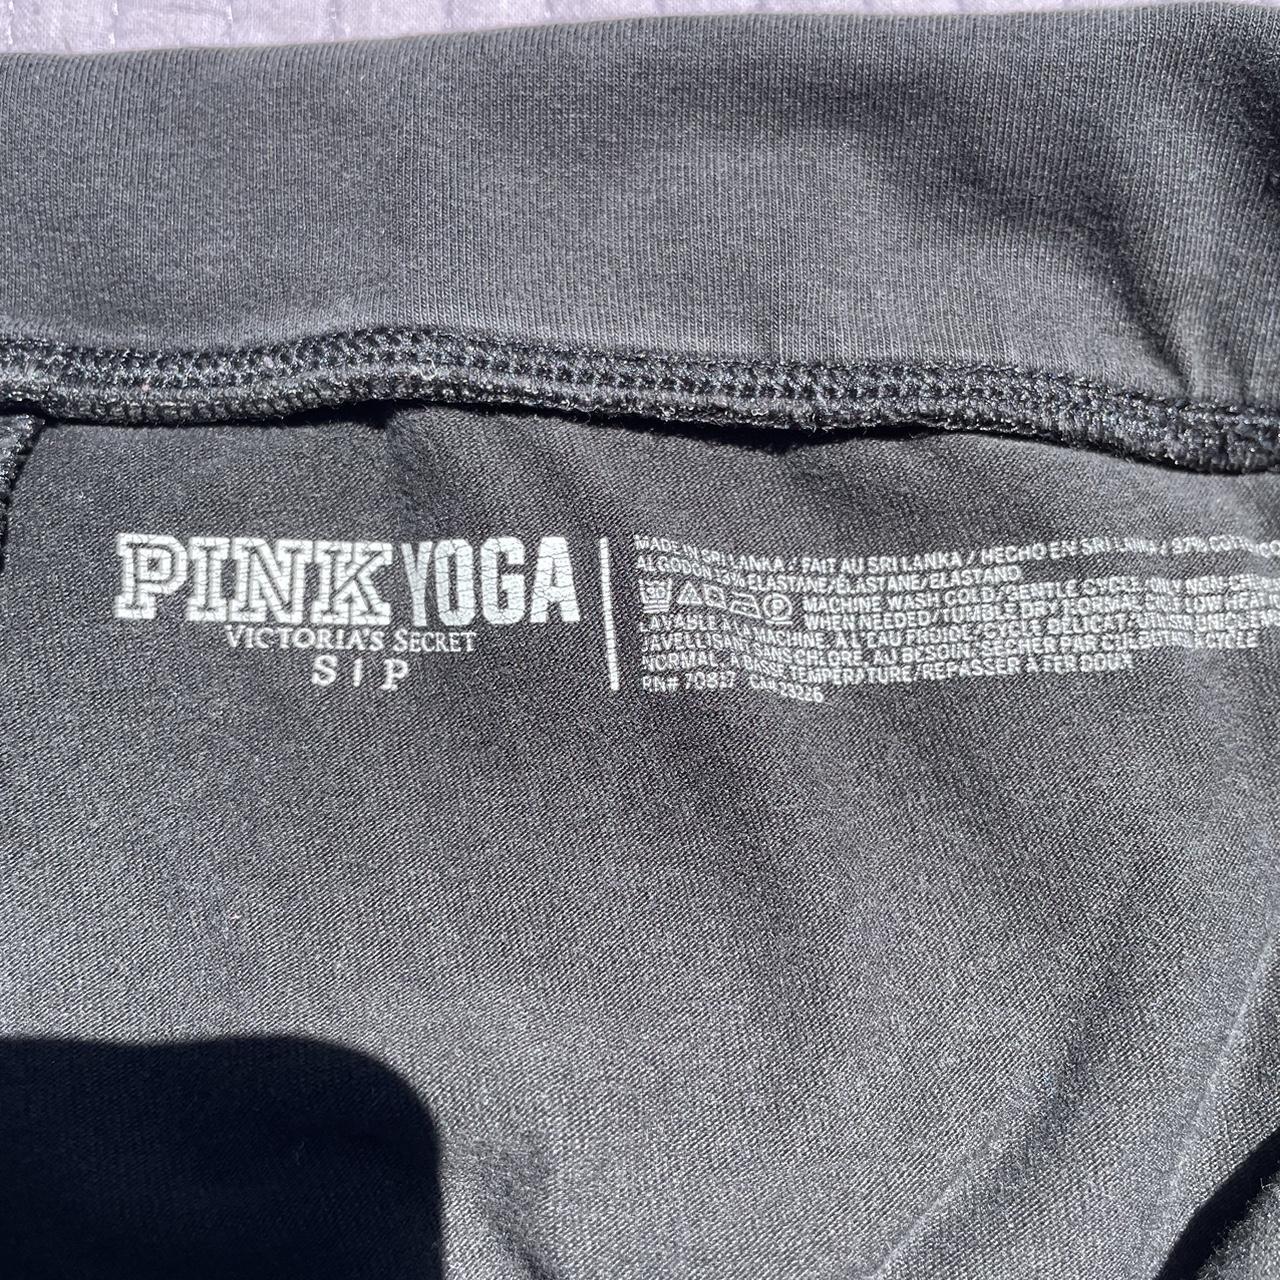 Victoria's Secret pink fold over yoga pants Chicago - Depop